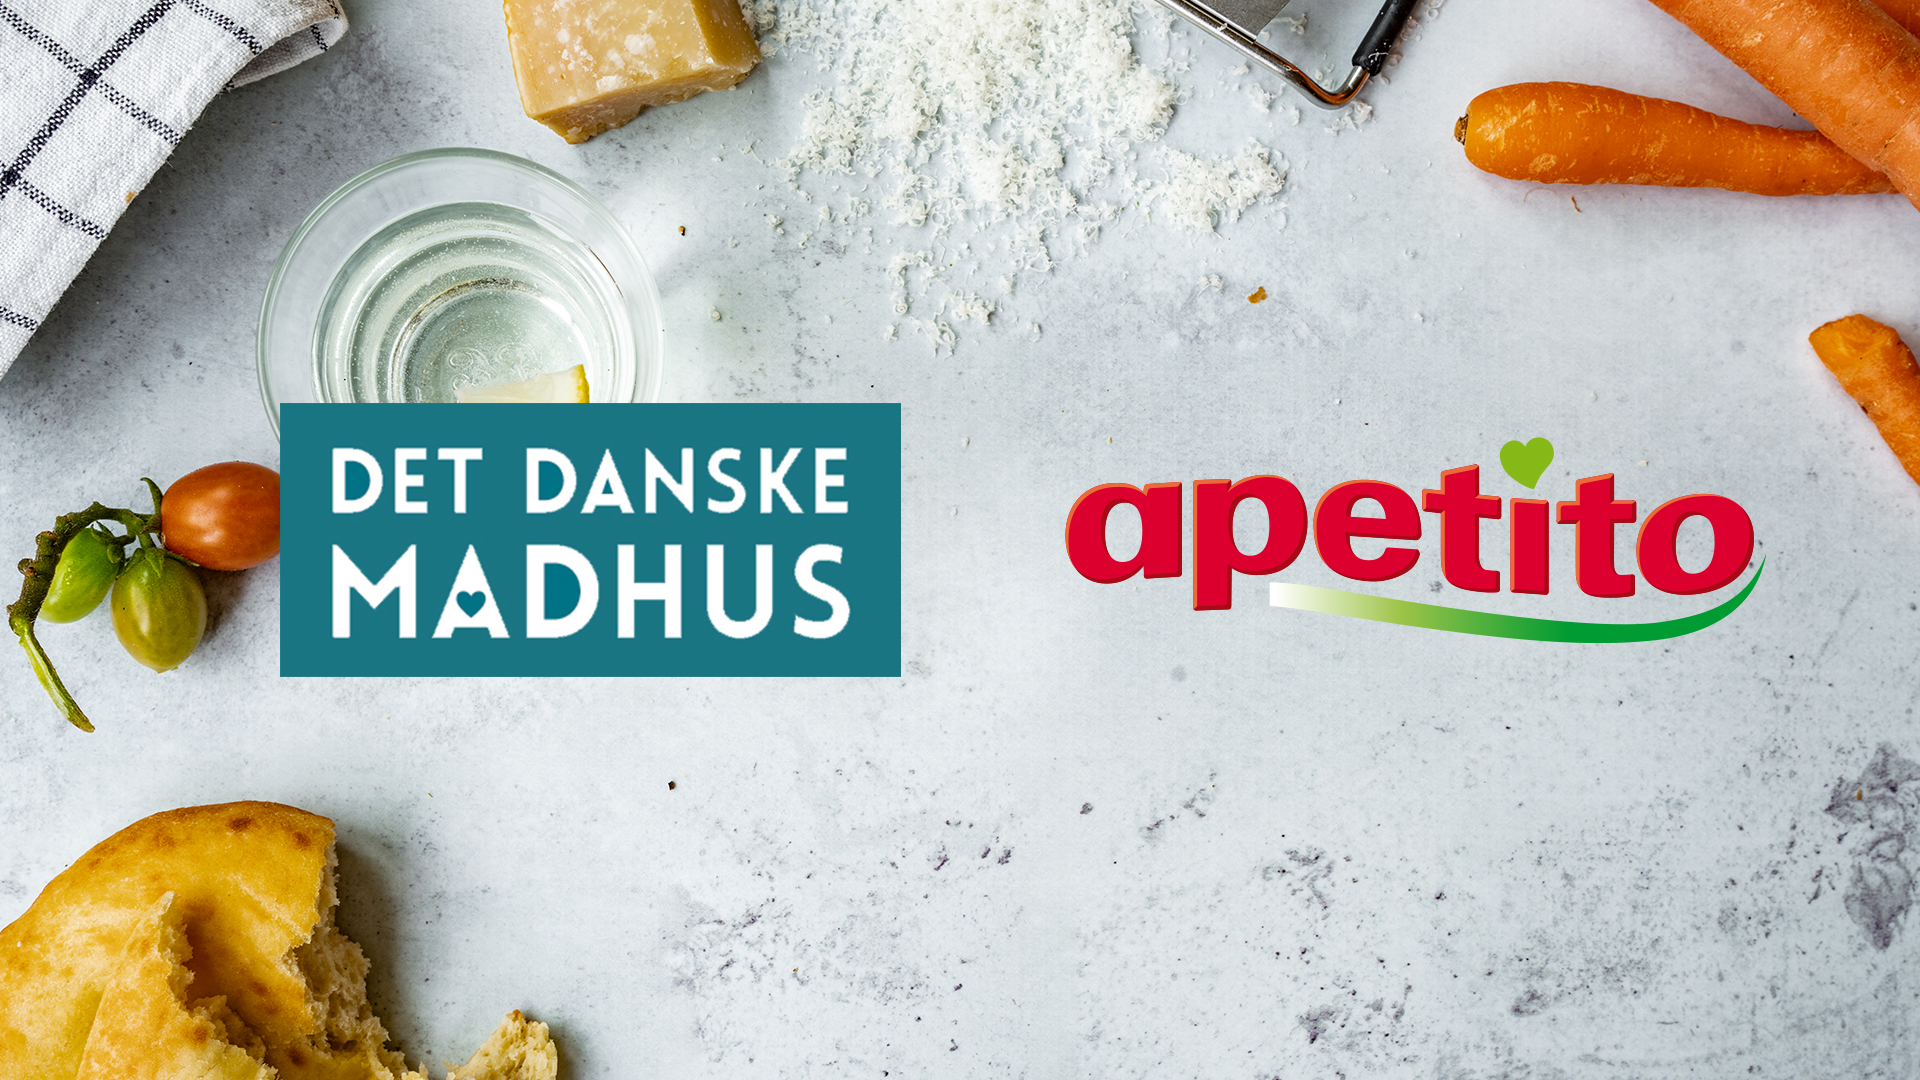 Polaris og stiftere sælger Det Danske Madhus til apetito Det Danske Madhus